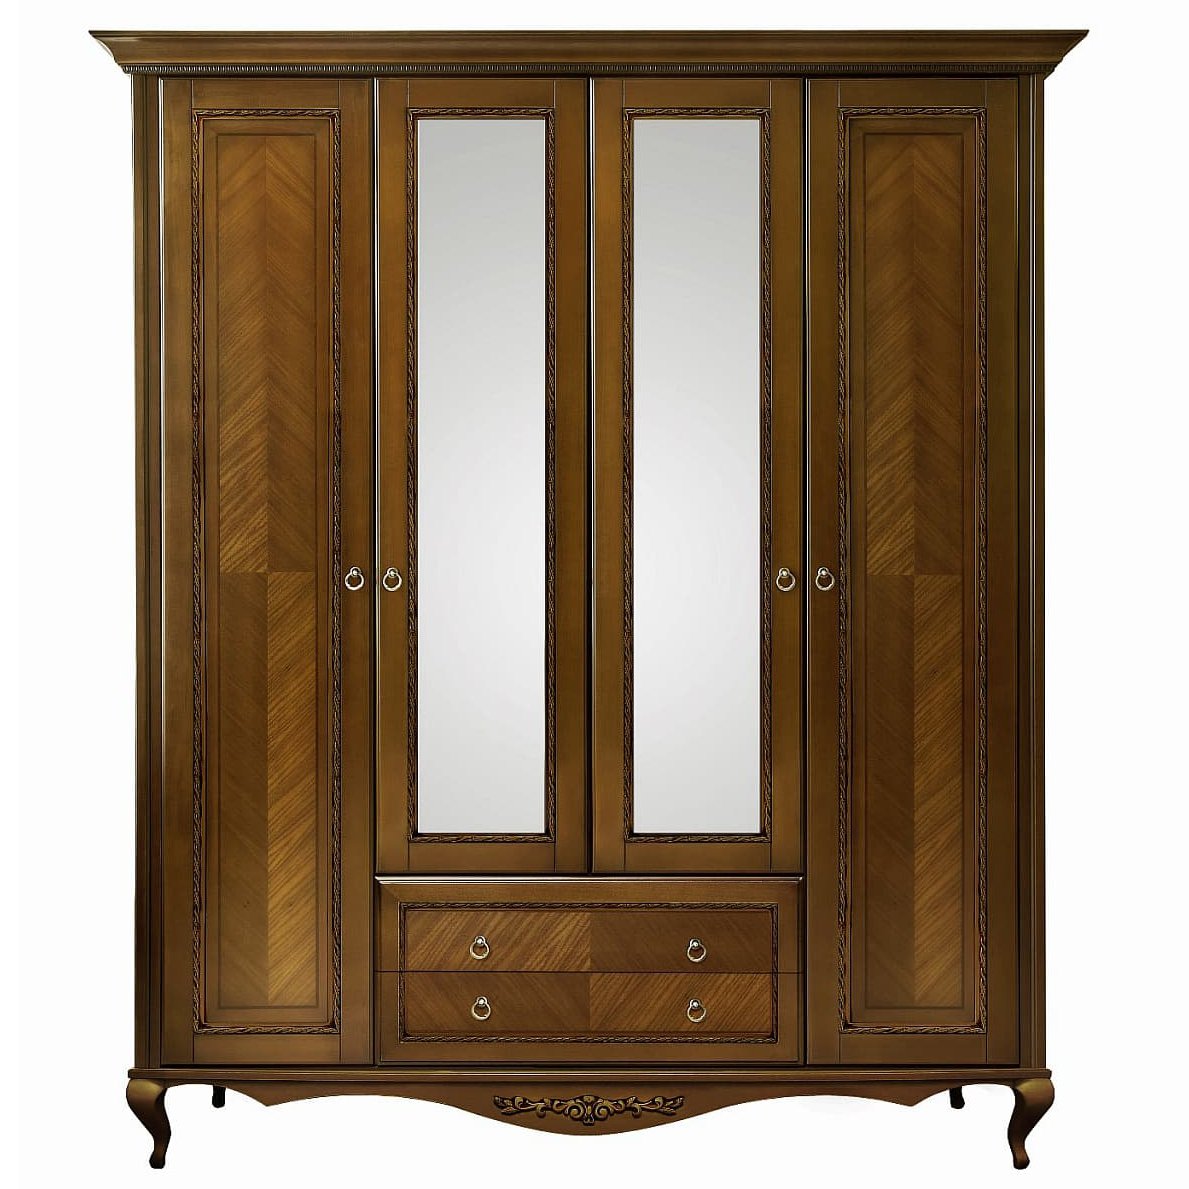 Шкаф платяной Timber Неаполь, 4-х дверный с зеркалами 204x65x227 см, цвет: орех (Т-524/N)Т-524